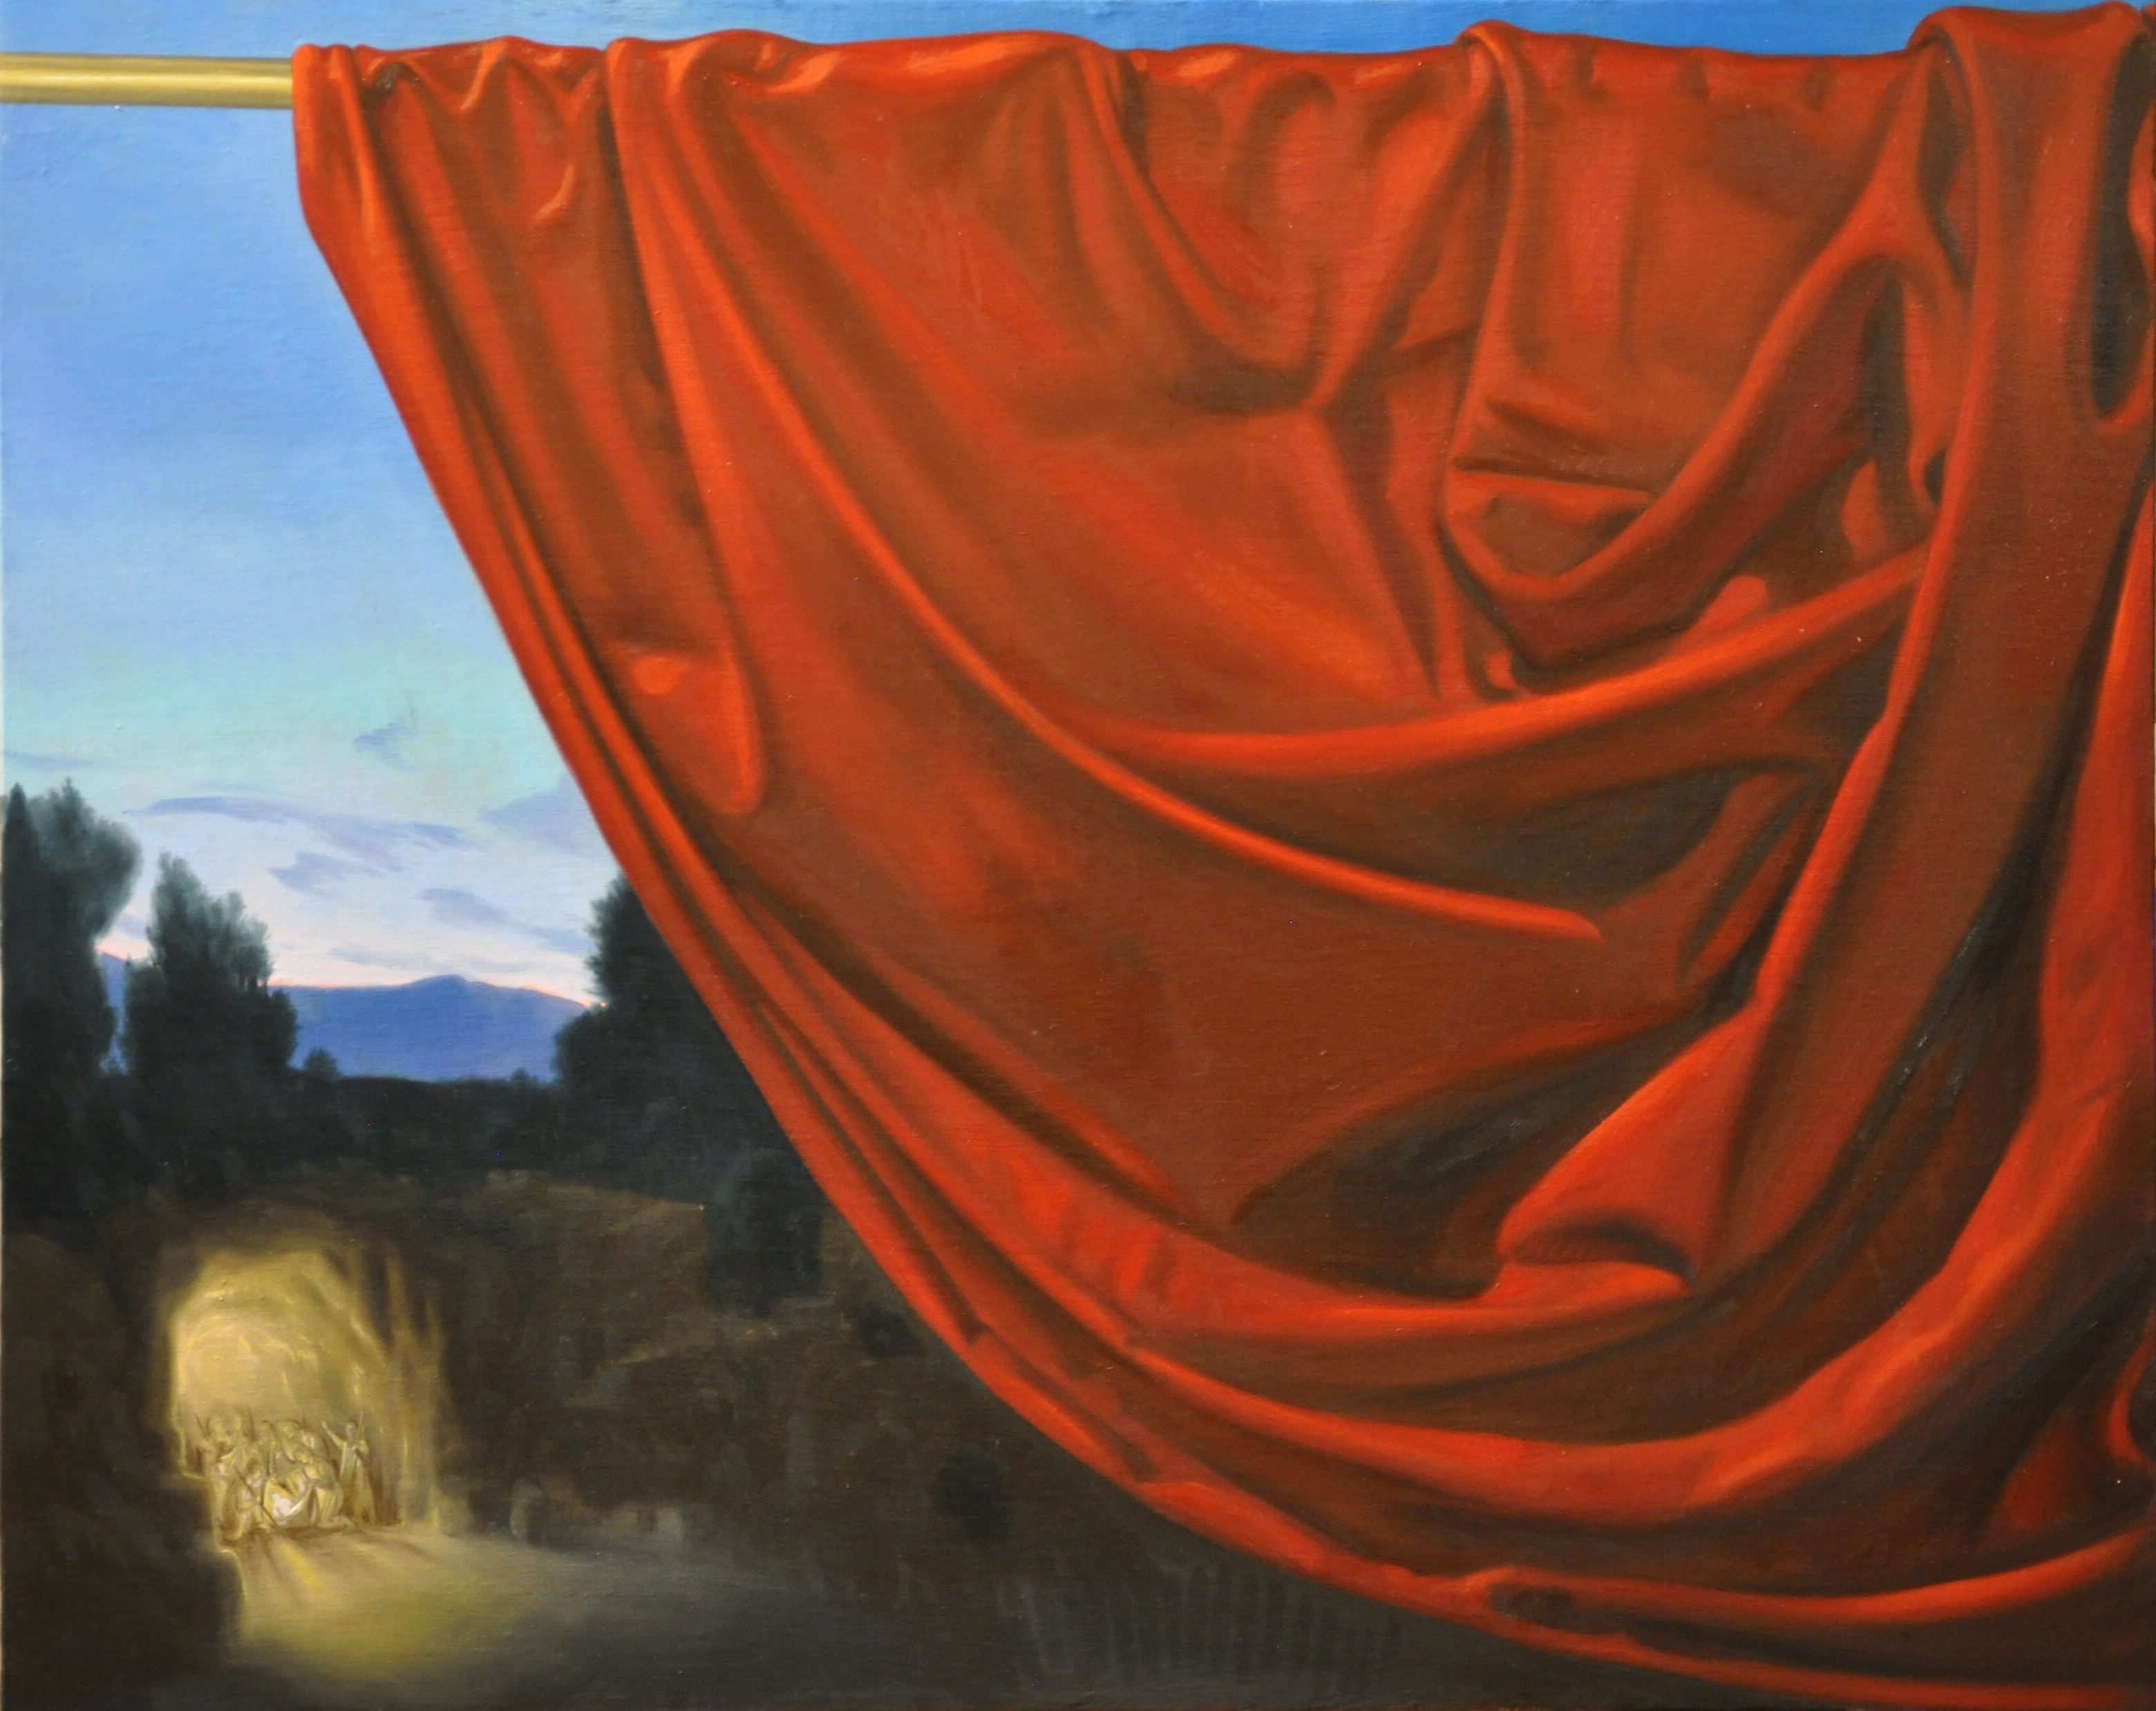 Grande drappo Epifania dei pastori, Rodolfo Papa, 2010, olio su tela 80x100 cm. Collezione privata